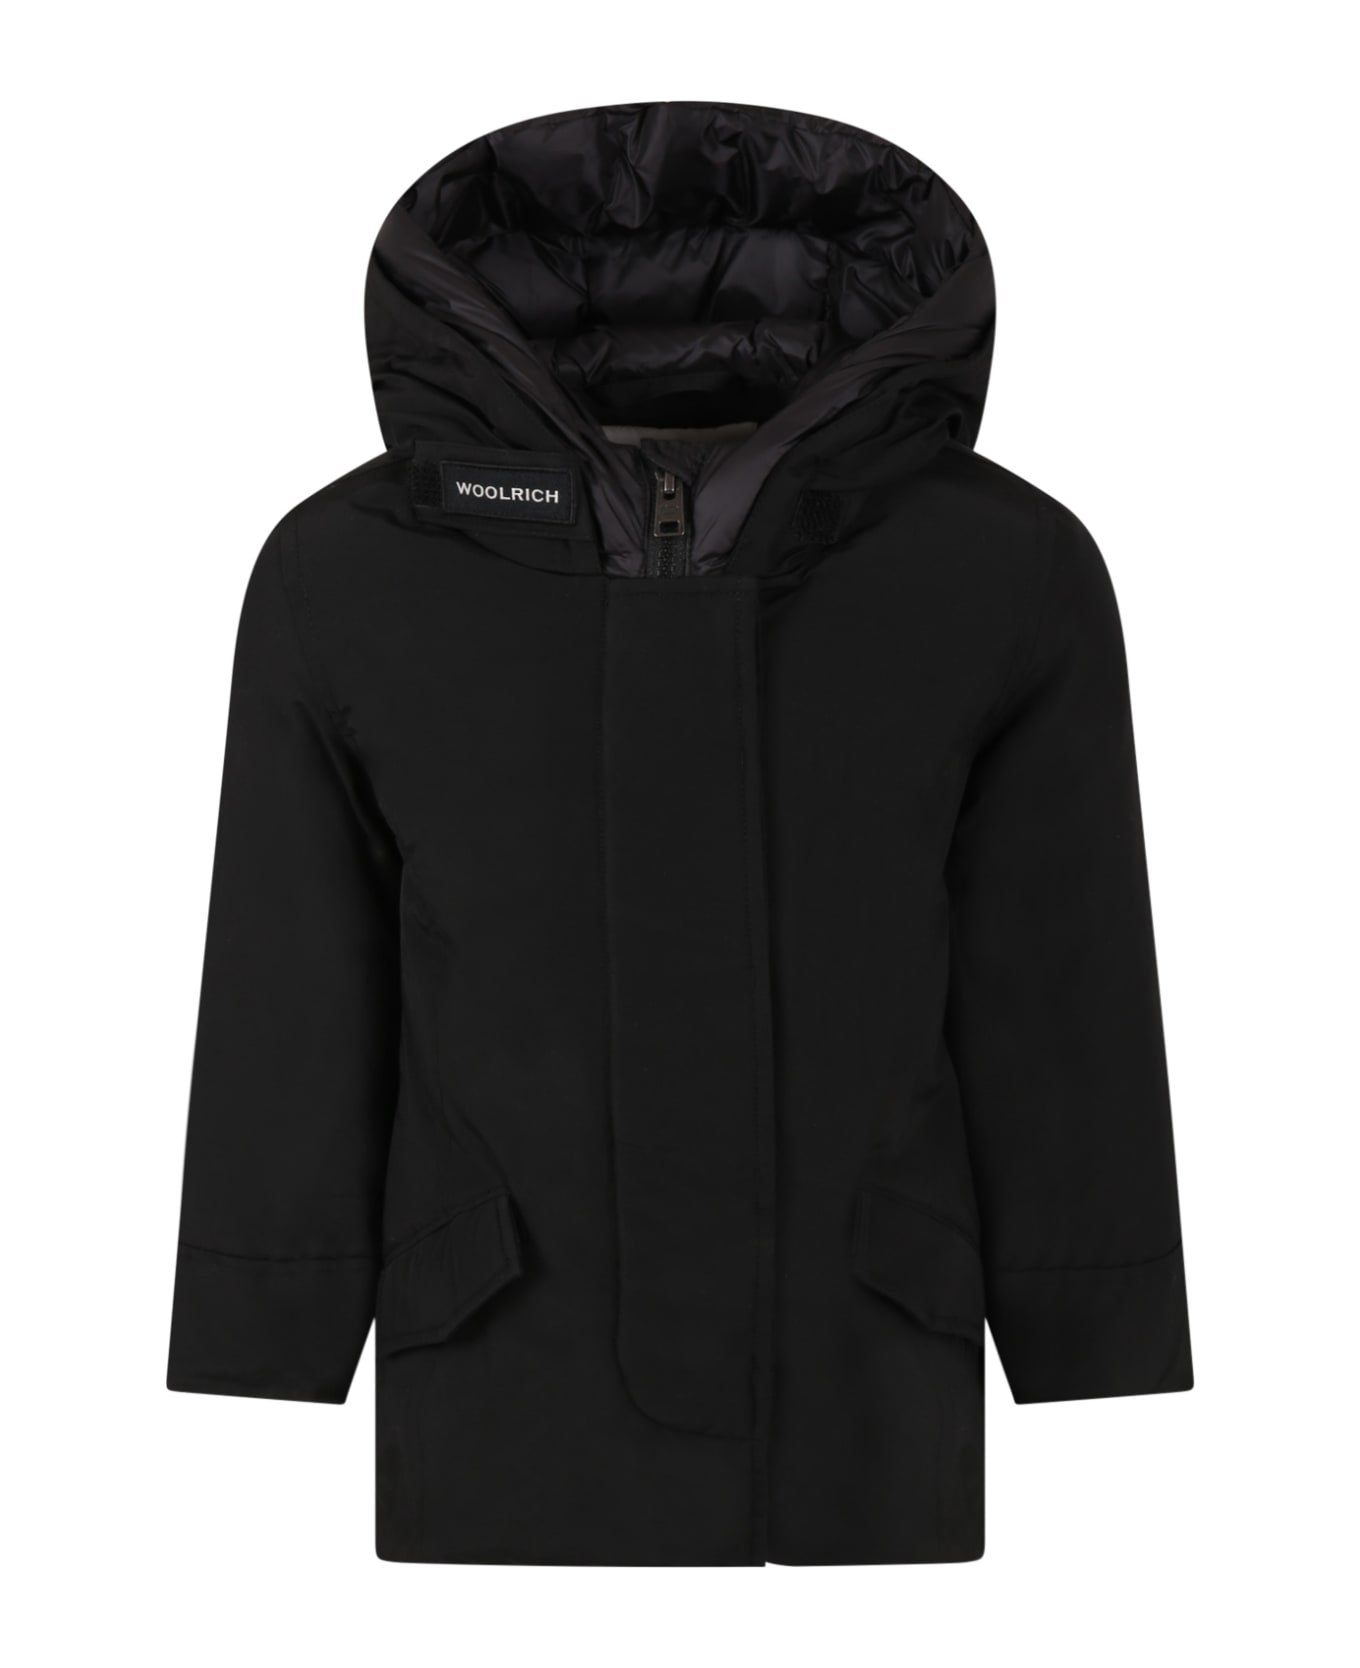 Woolrich Black ''arctic Parka'' Jacket For Girl - Black